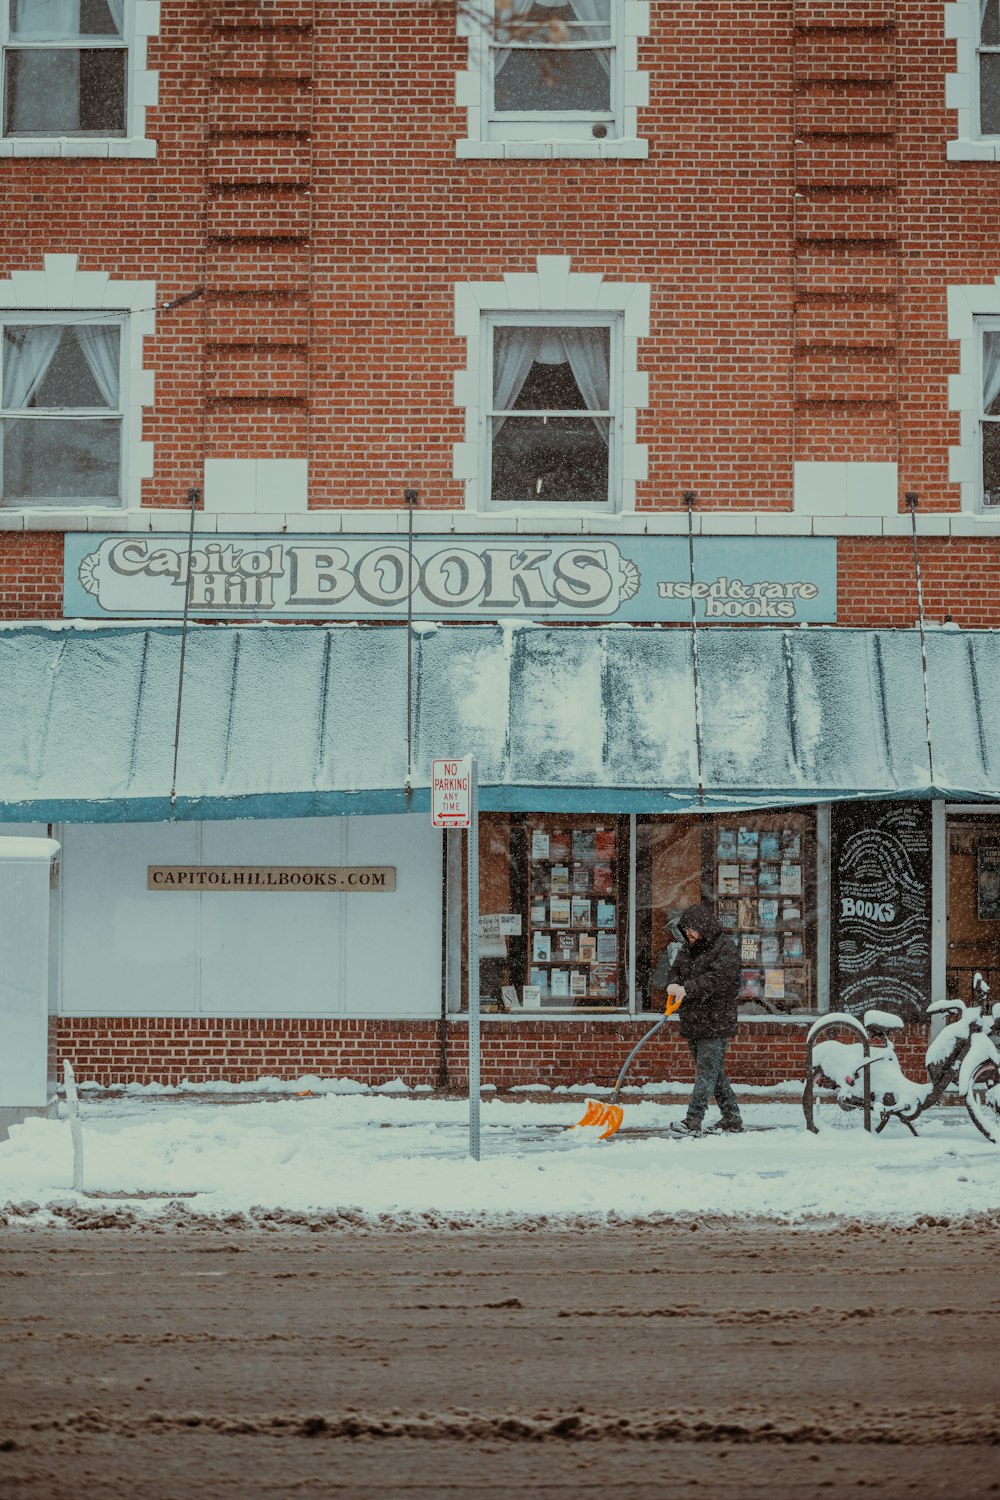 une personne promenant un chien devant une librairie